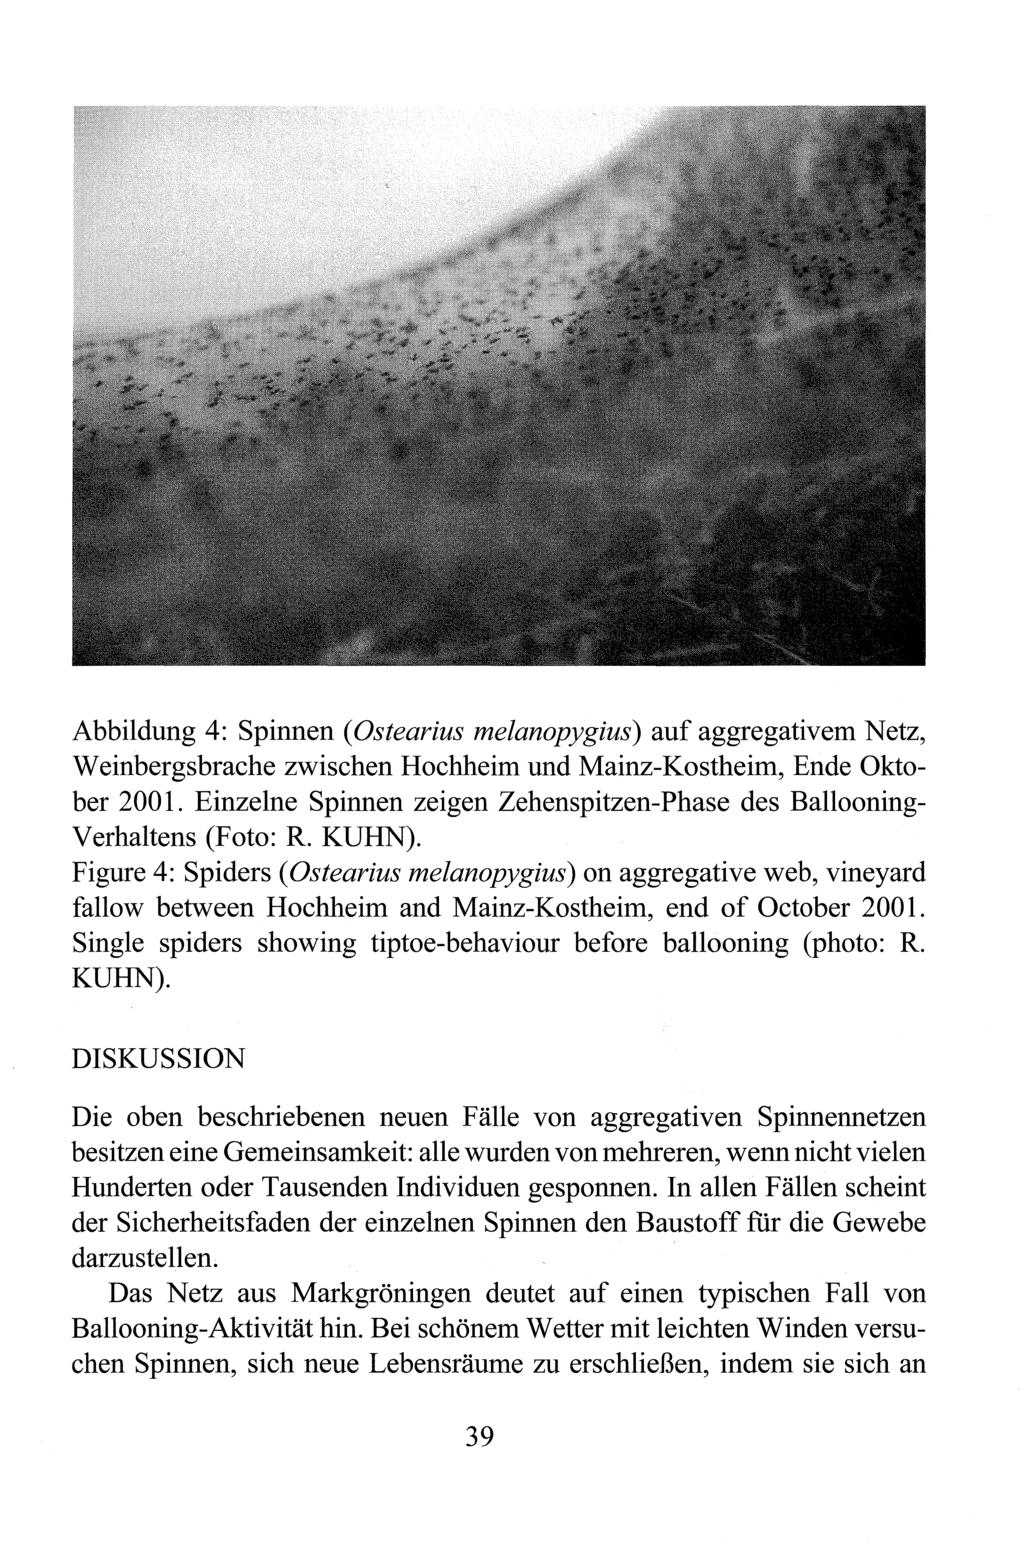 Abbildung 4: Spinnen (Ostearius melanopygius) auf aggregativem Netz, Weinbergsbrache zwischen Hochheim und Mainz-Kostheim, Ende Oktober 2001.